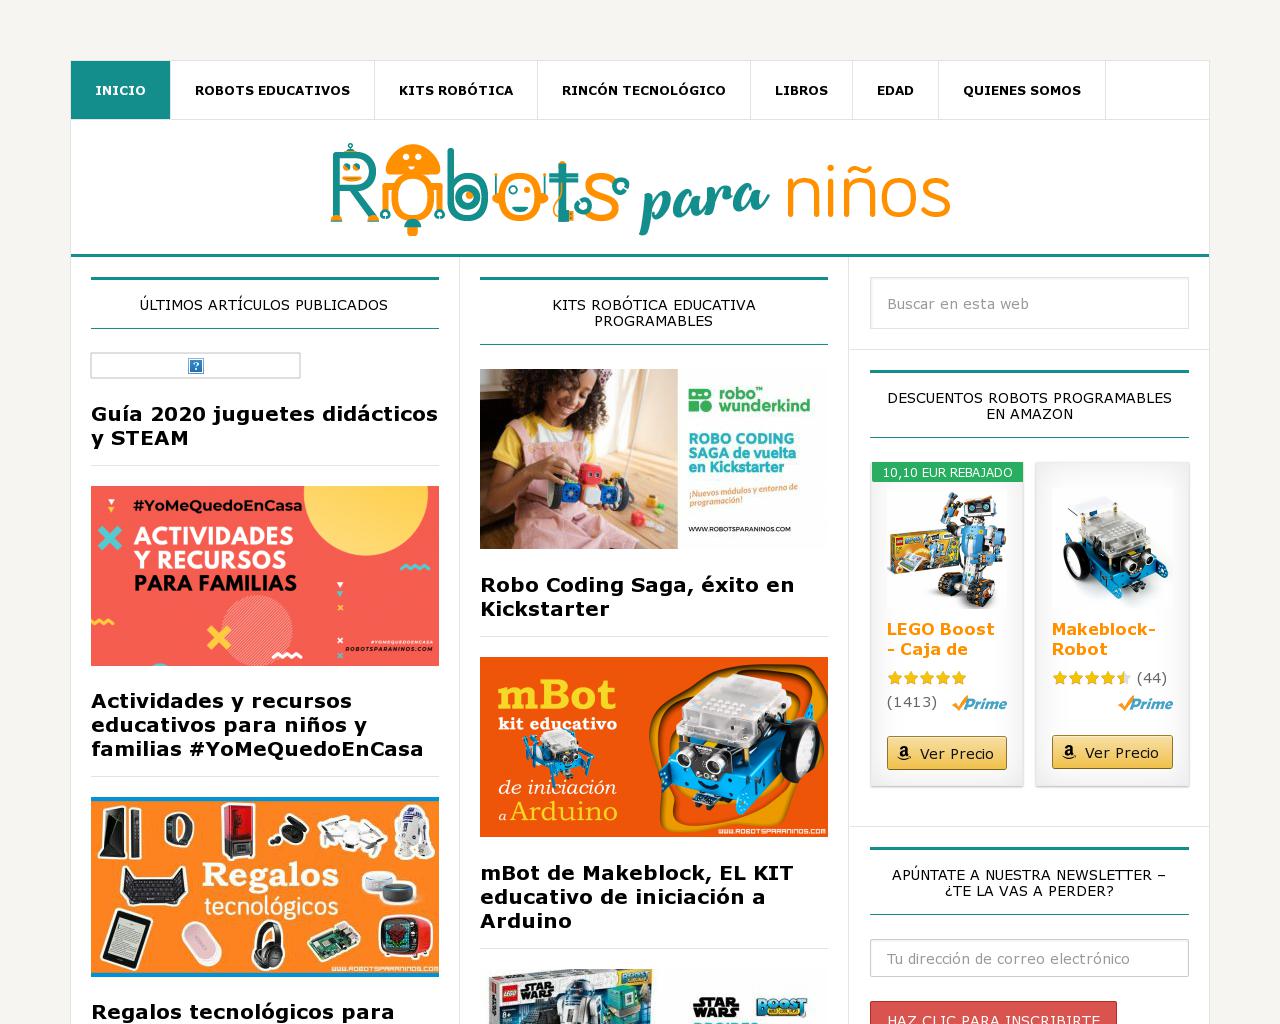 robotsparaninos.com